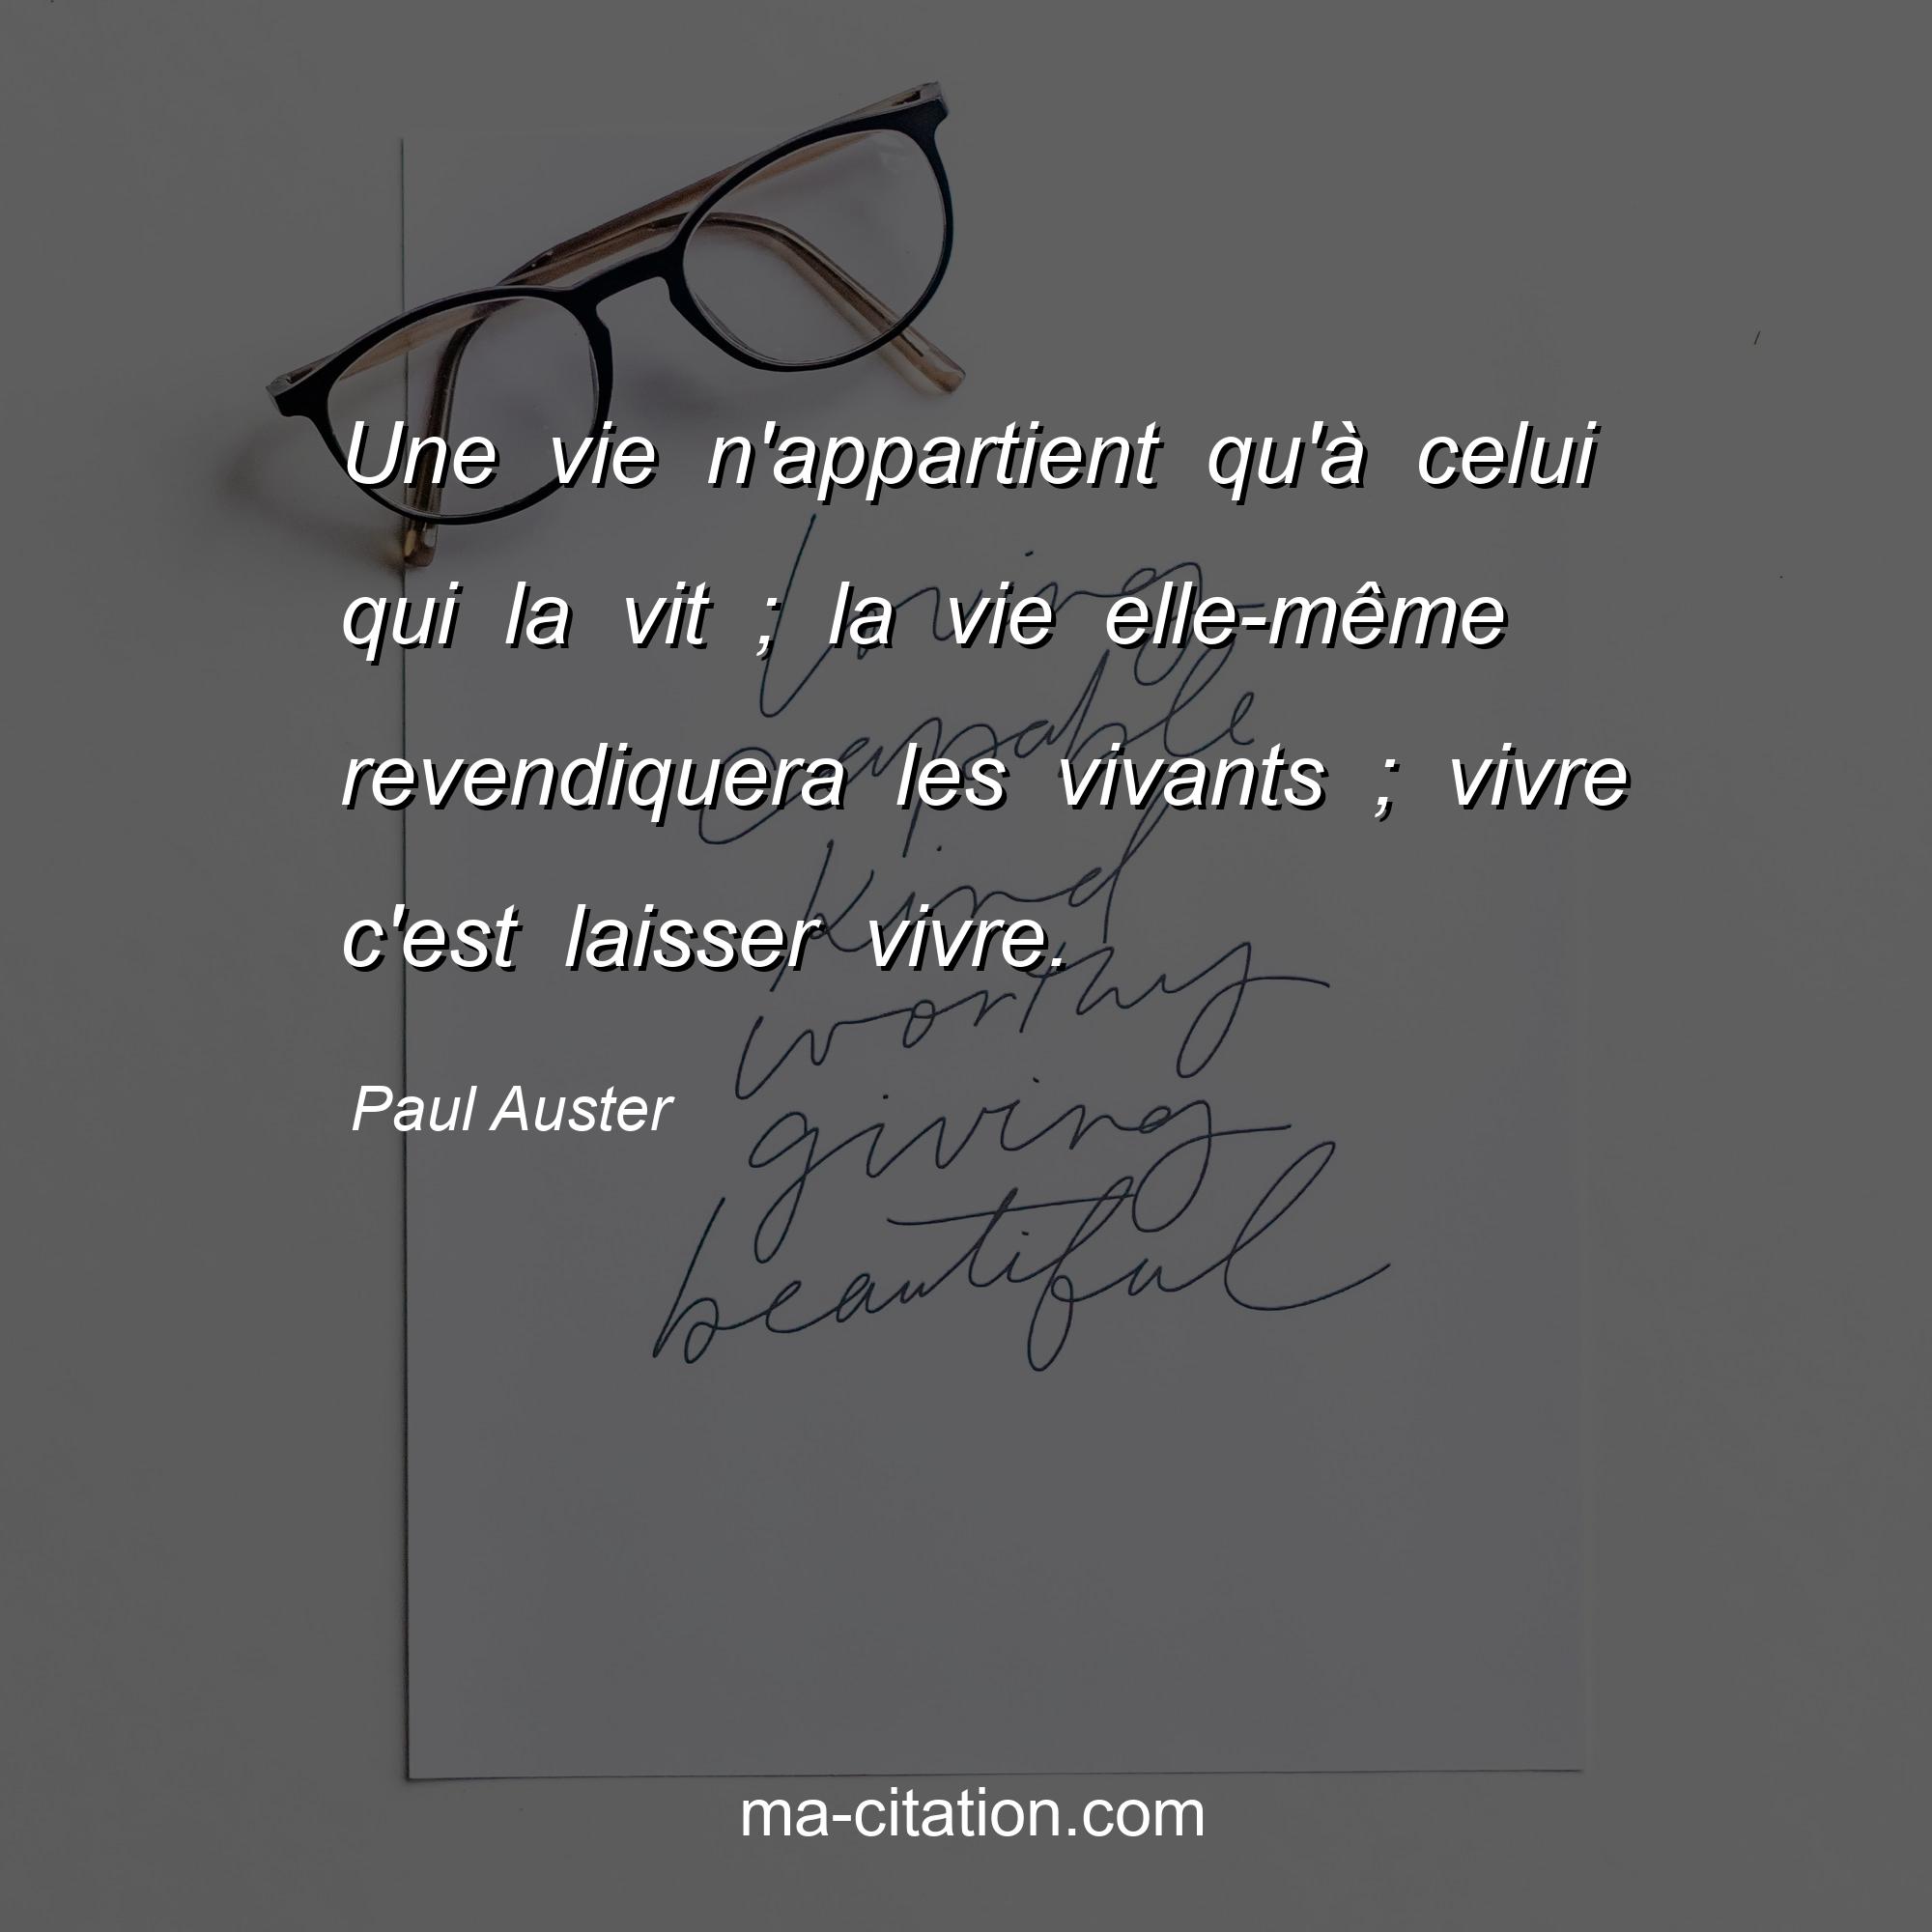 Paul Auster : Une vie n'appartient qu'à celui qui la vit ; la vie elle-même revendiquera les vivants ; vivre c'est laisser vivre.